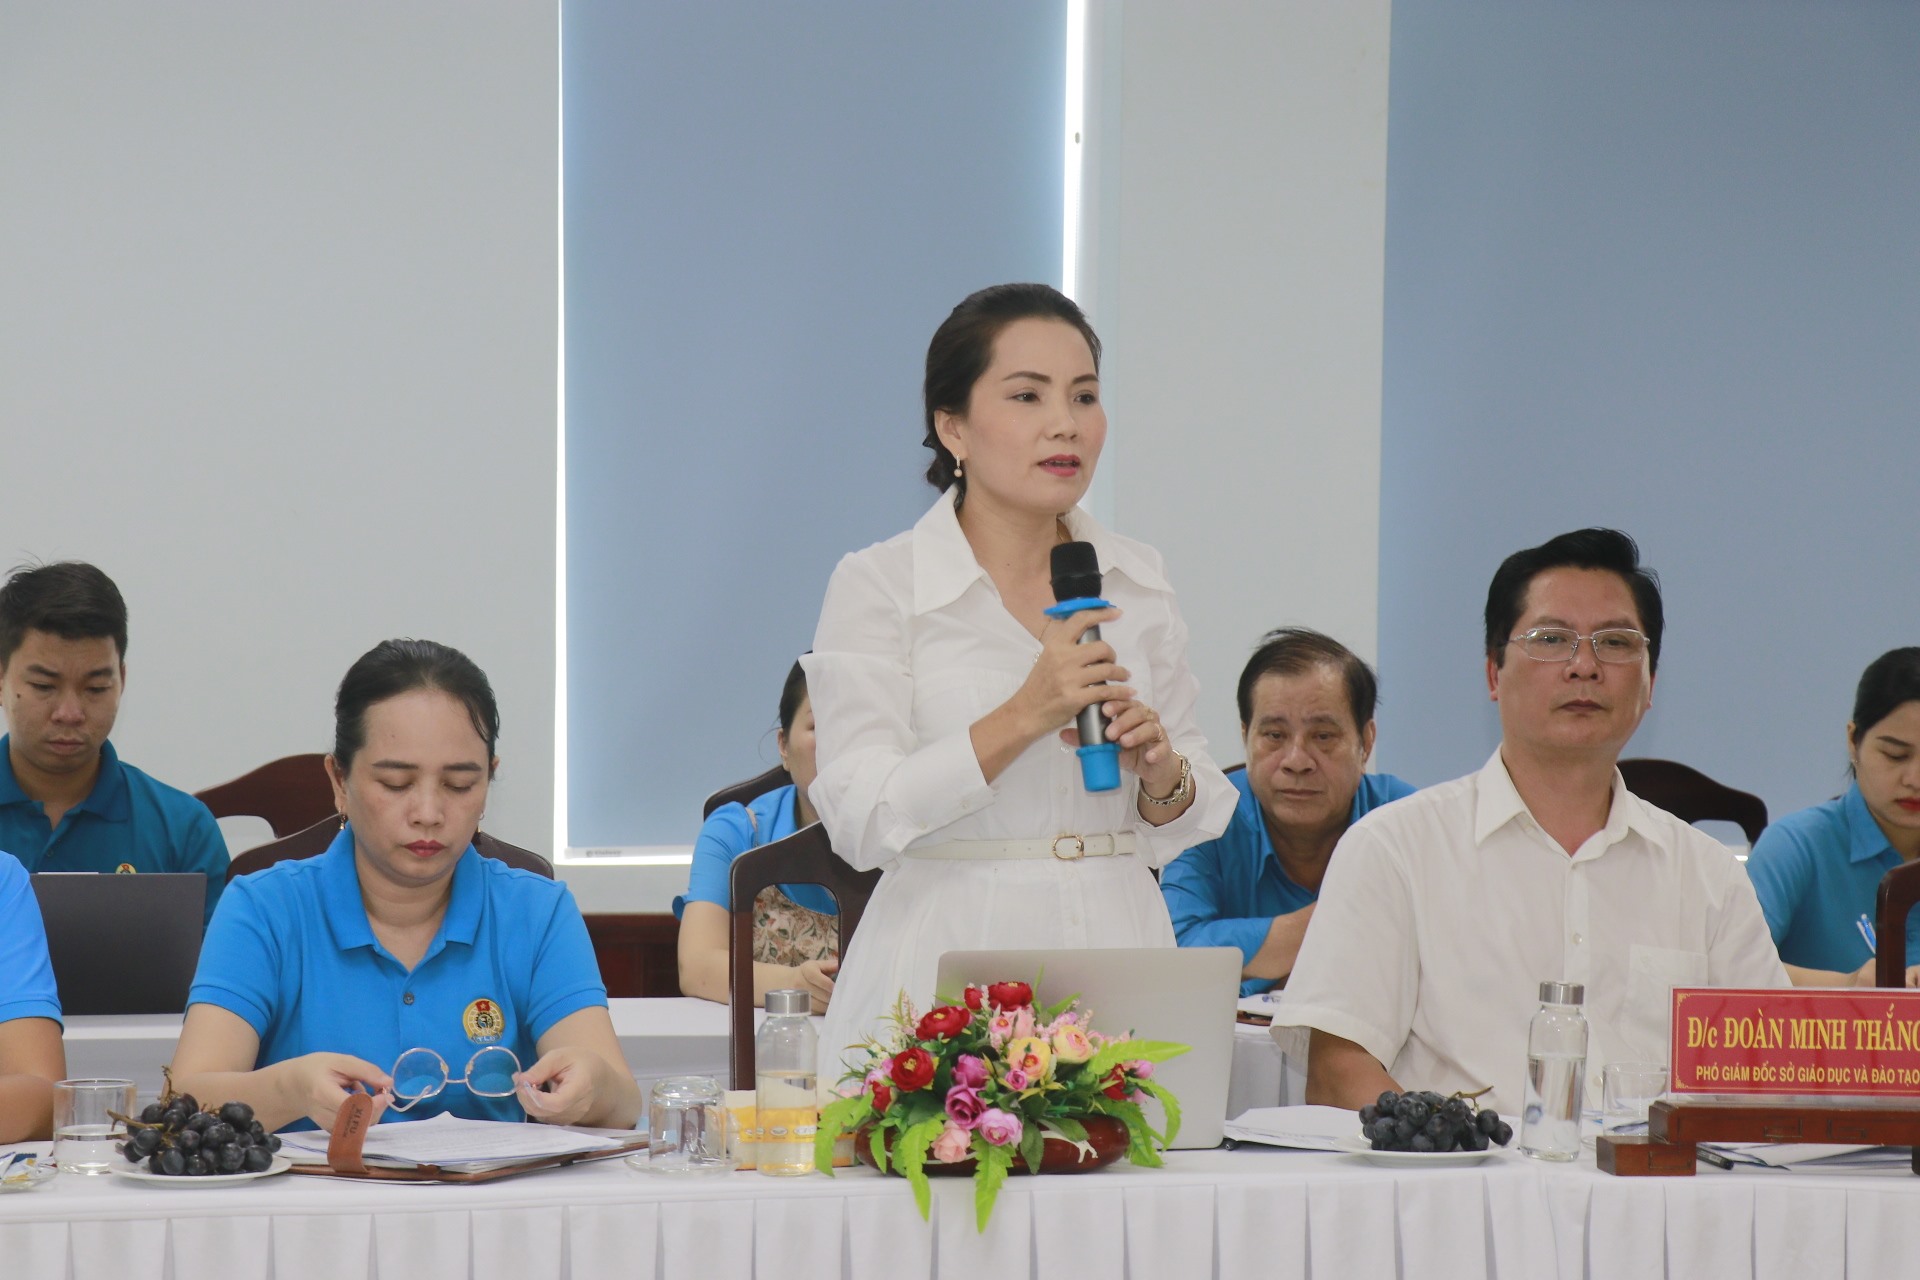 Bà Trần Thị Thúy Phương - Phó Trưởng phòng Mầm non - Sở GD&ĐT Thừa Thiên Huế phát biểu tại hội nghị.